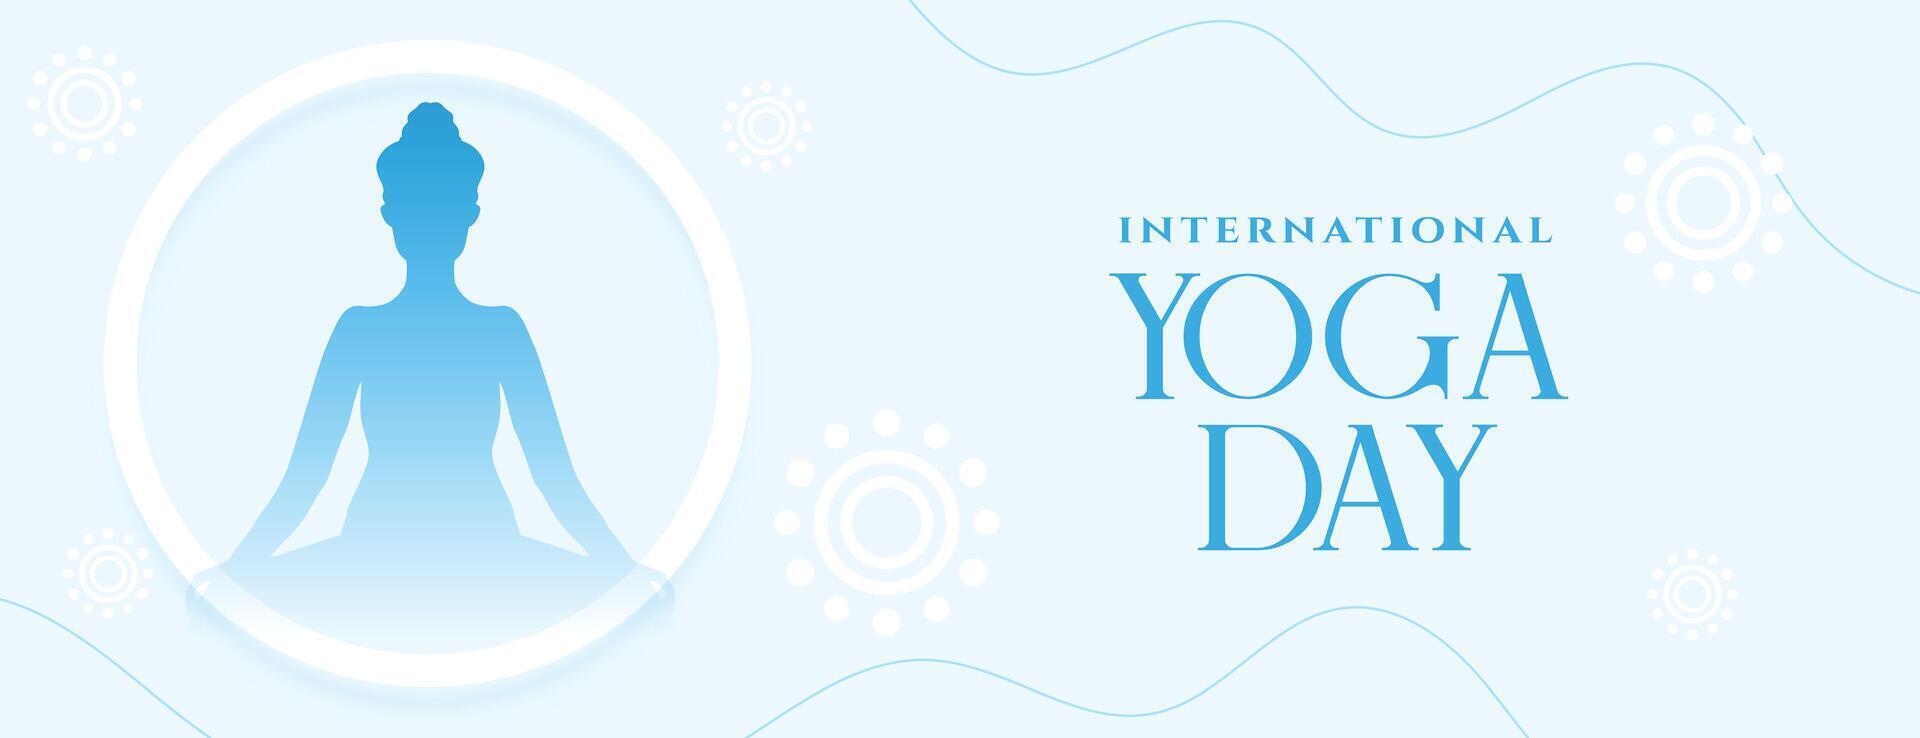 Perfetto internazionale yoga giorno evento manifesto per spirituale terapia vettore